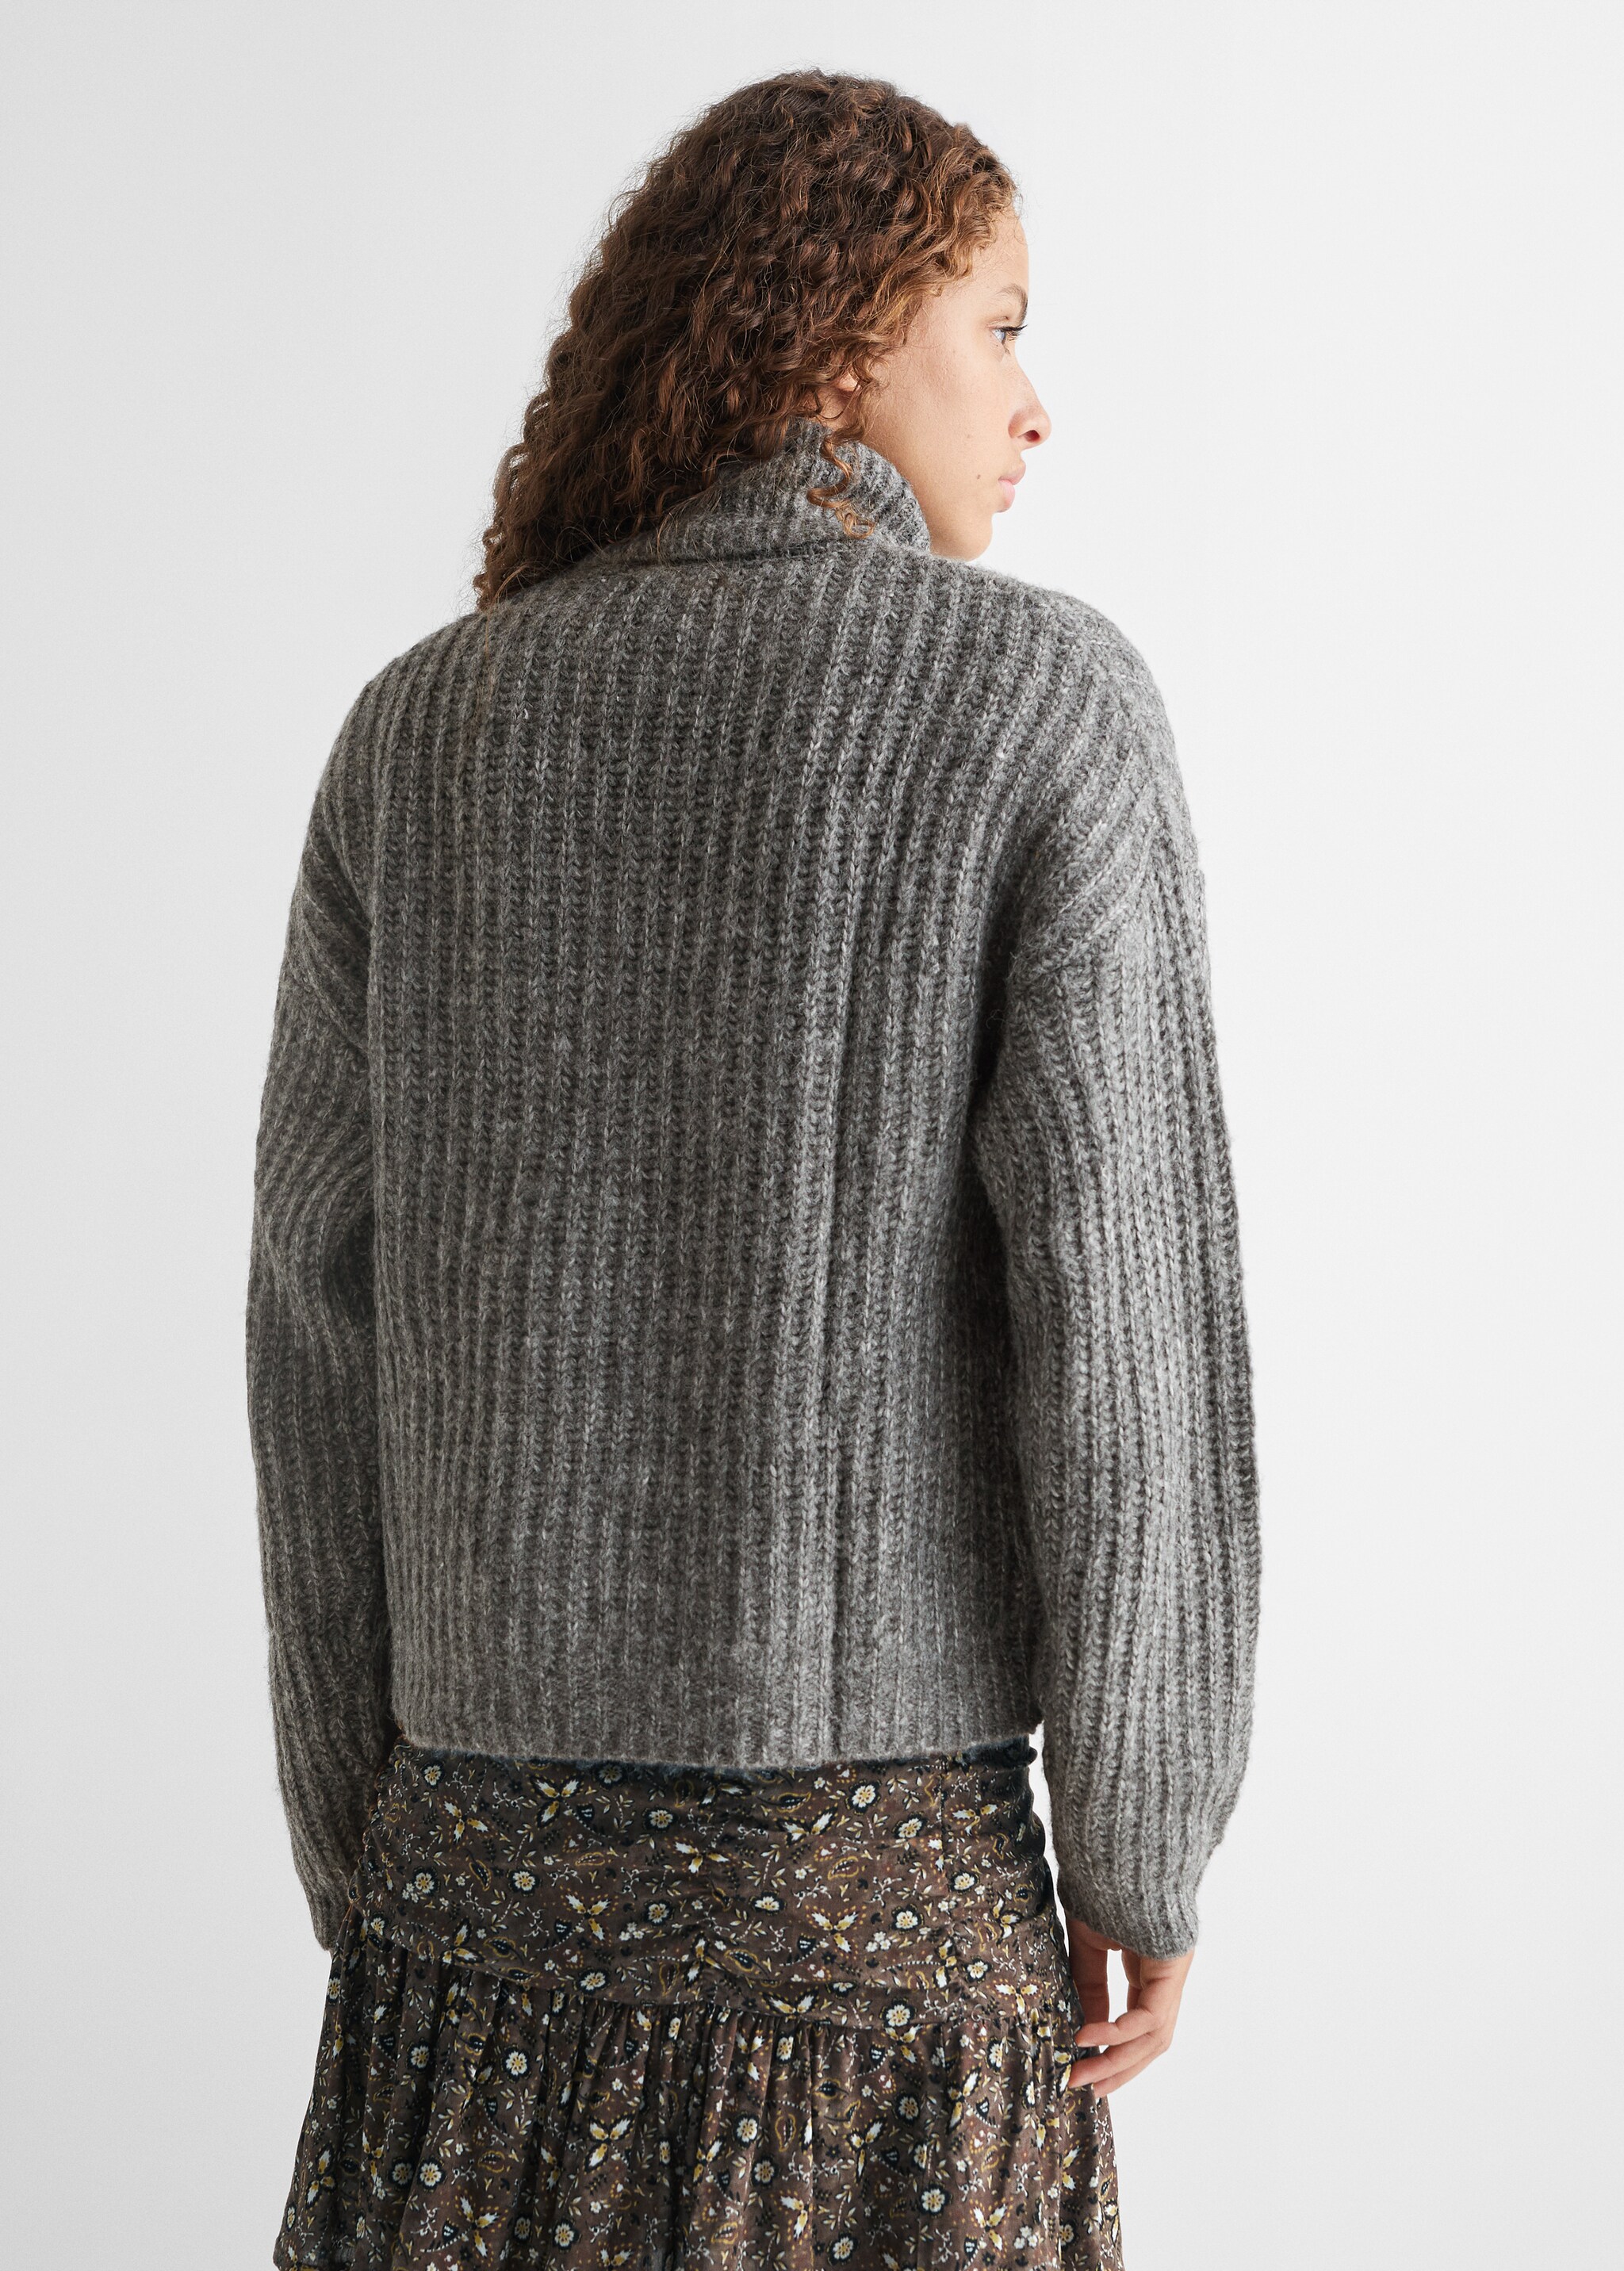 Turtleneck knitted sweater - Achterkant van het artikel